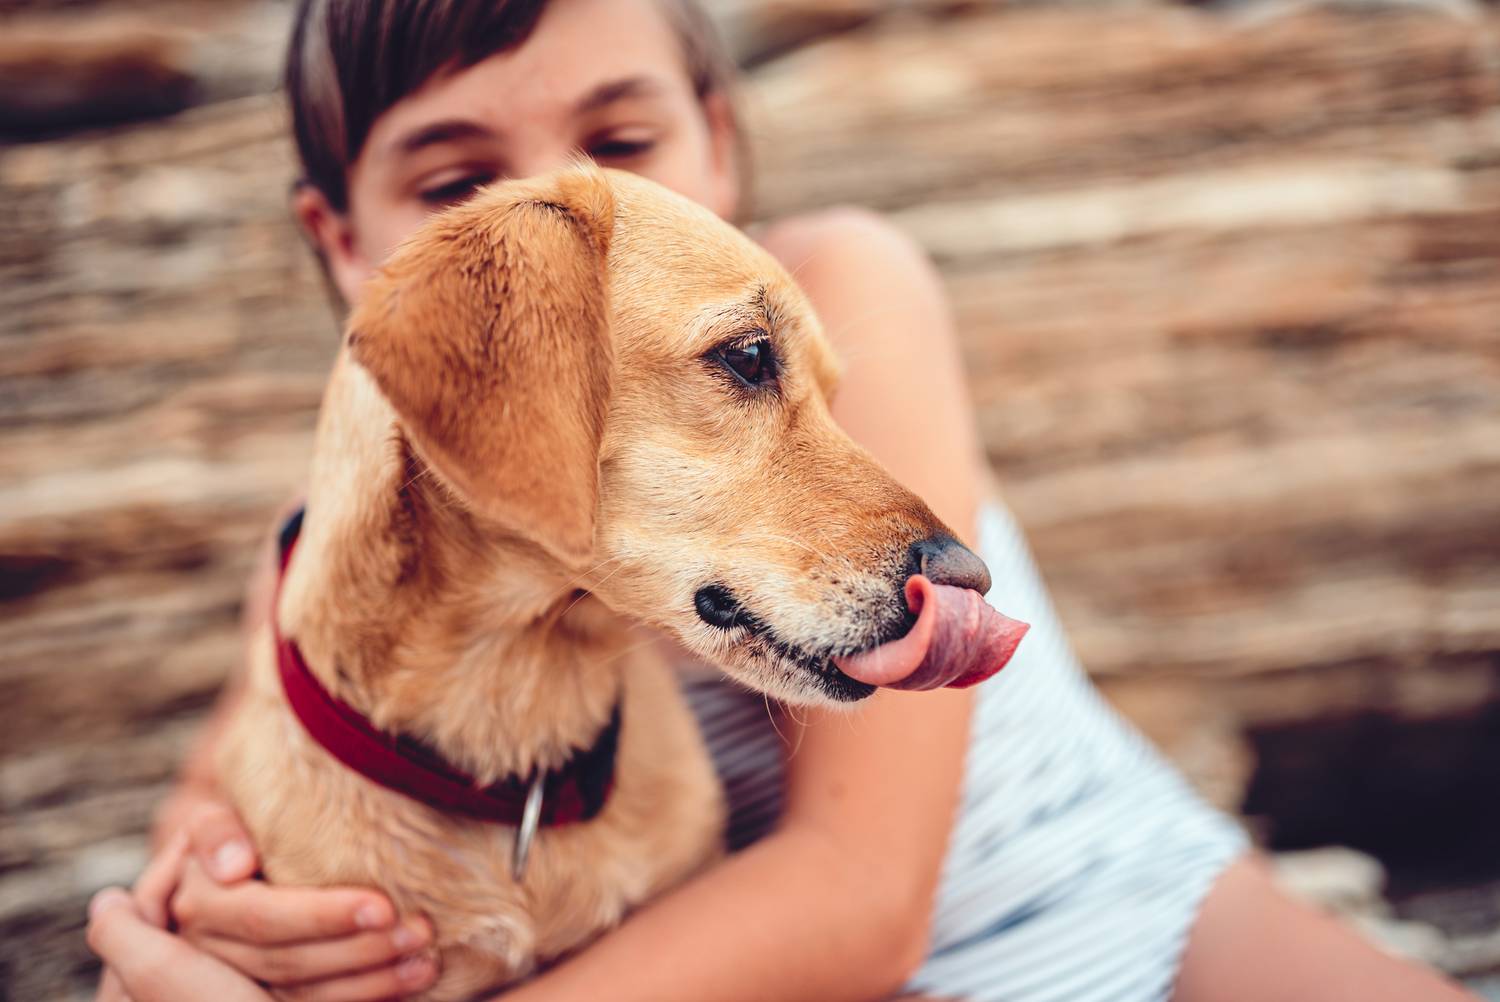 A szoros ölelgetést nem igénylik a kutyusok, a kontaktus rákényszerítése feszültséget okoz kedvenced számára. Gyakori stresszjel ilyenkor a száj nyalogatása, amellyel magát nyugtatja.